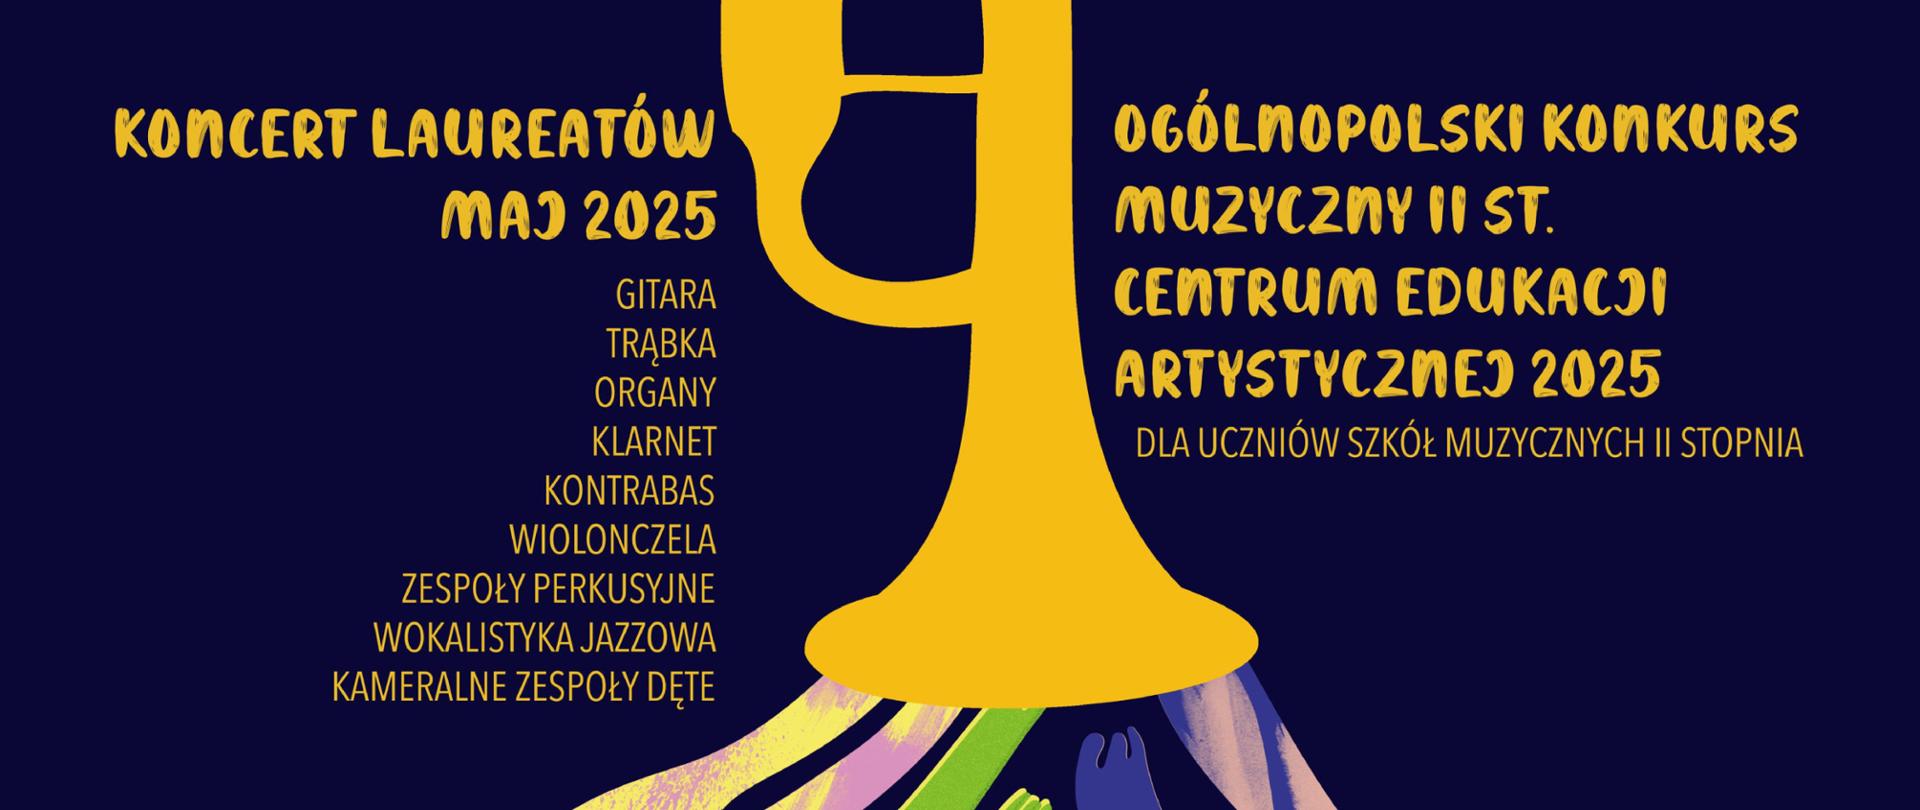 Plakat z napisem Koncert laureatów Ogólnopolskiego Konkursu muzycznego II st. Centrum Edukacji Artystycznej 2025. Ilustracja trąbki z której wydobywają się wielobarwne kształty.